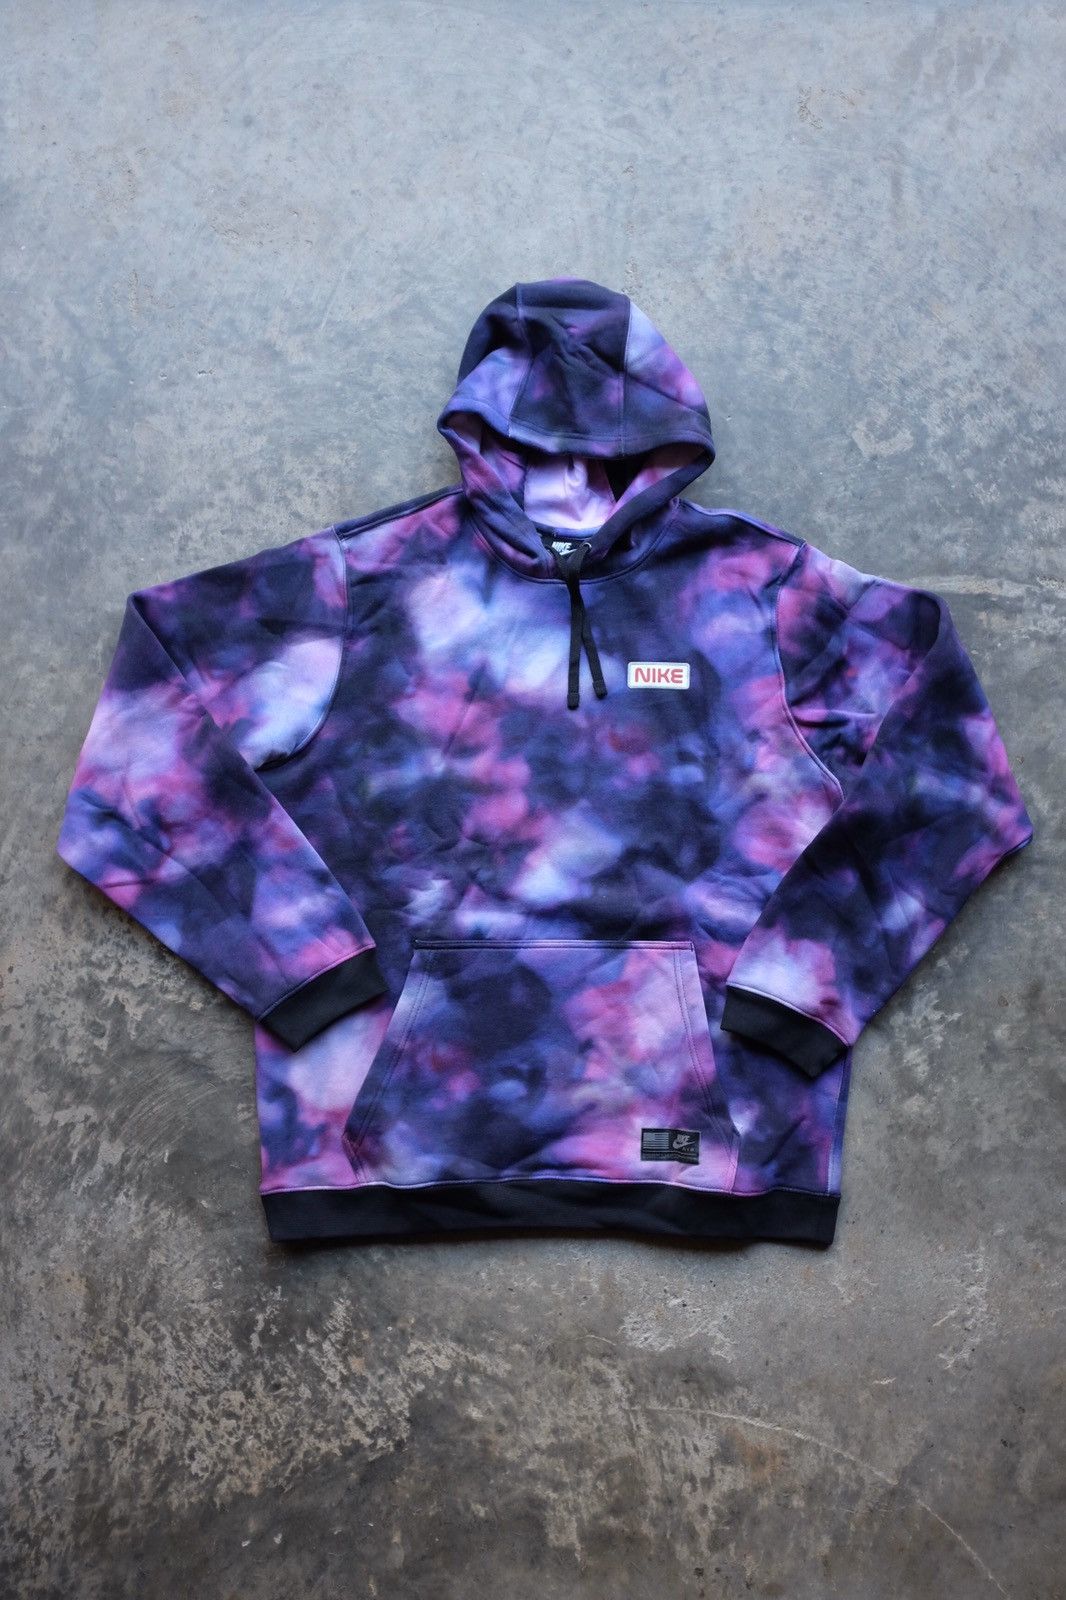 Nike Nike Sportswear “NASA” galaxy Purple Tie Dye hoodie Size US XL / EU 56 / 4 - 1 Preview